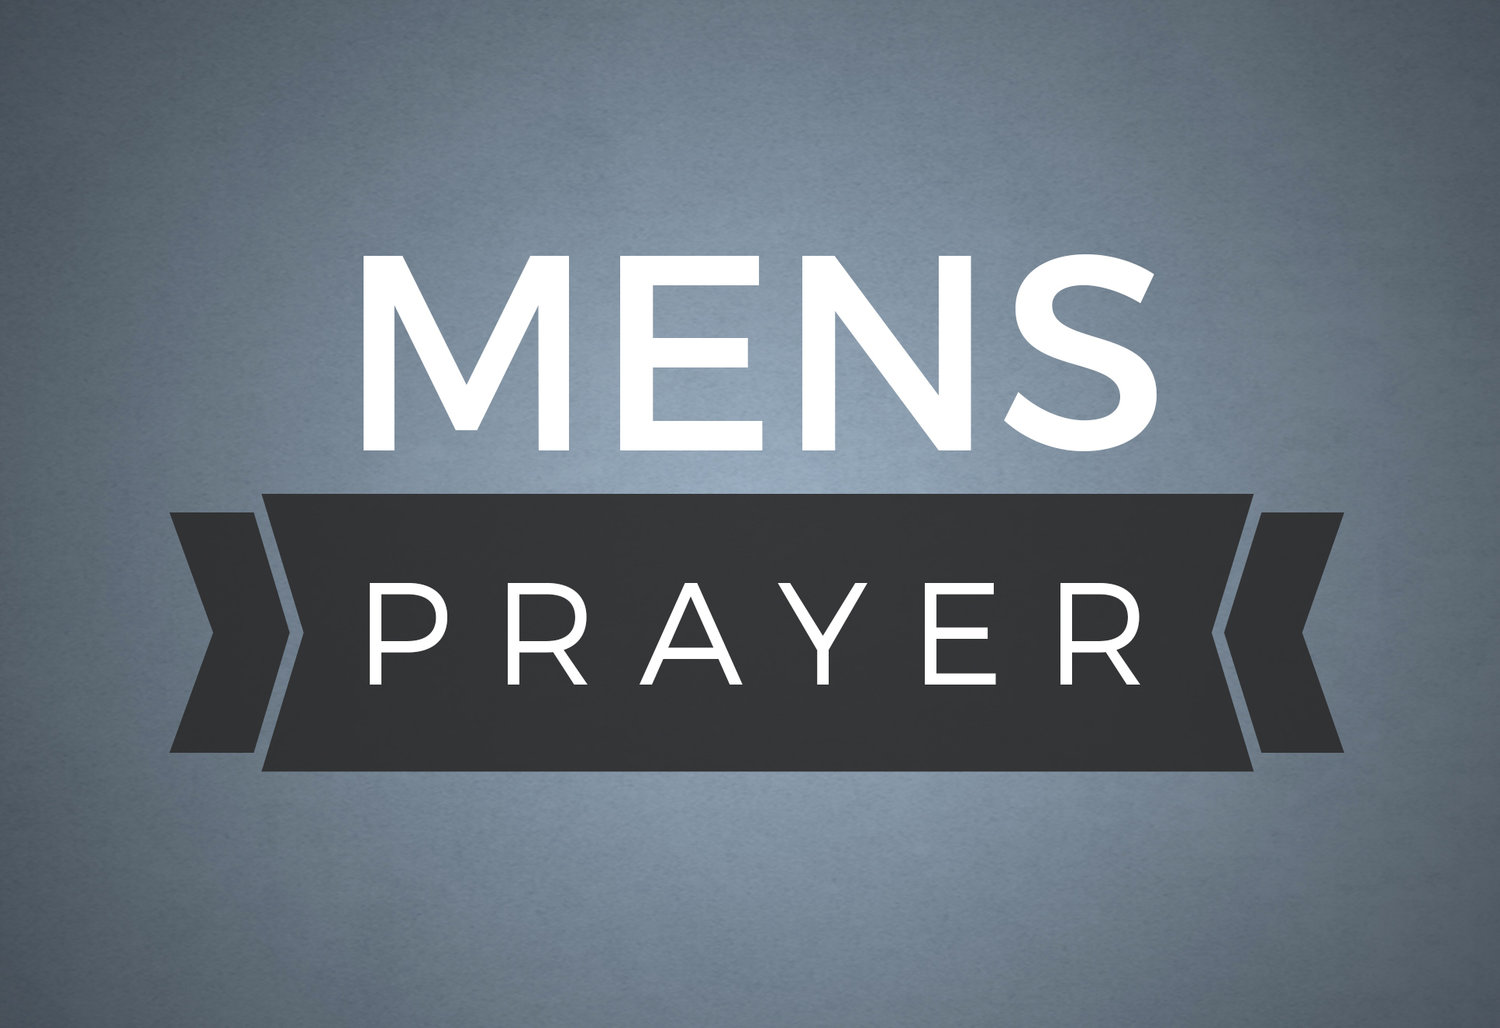 Men's Prayer